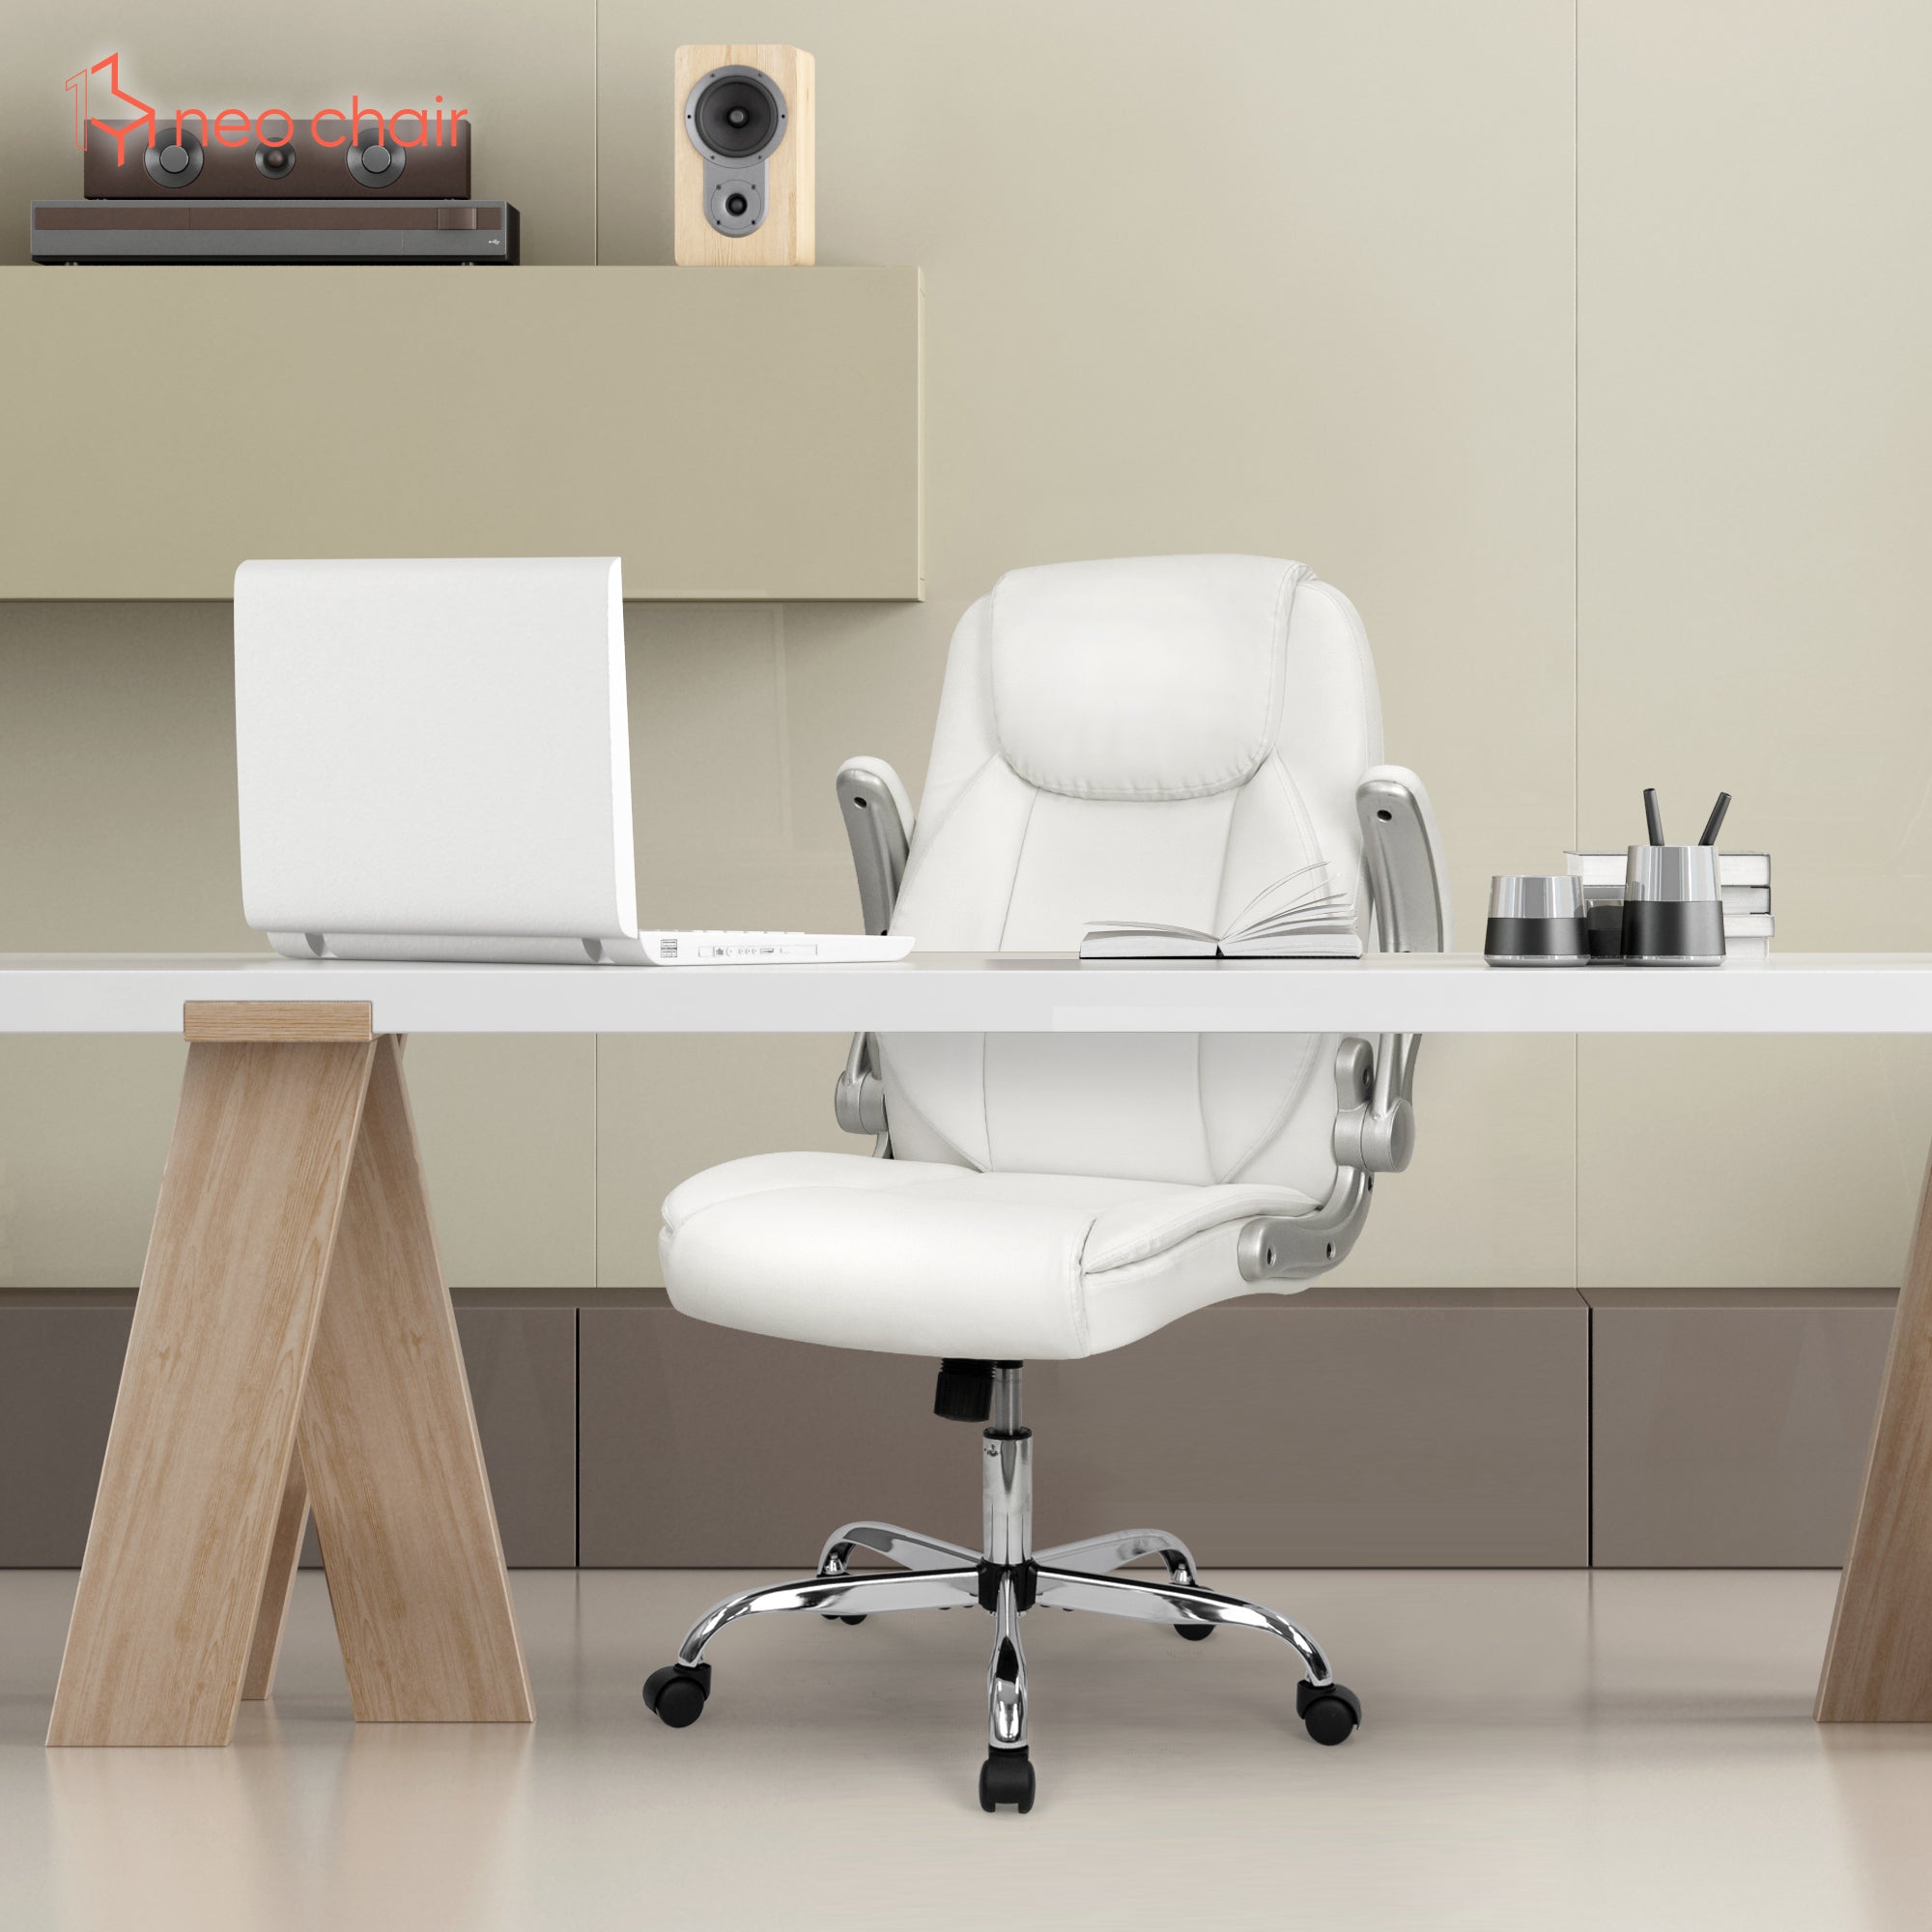 H-PAC 社長椅子 高級 オフィスチェア ワークチェア 事務椅子